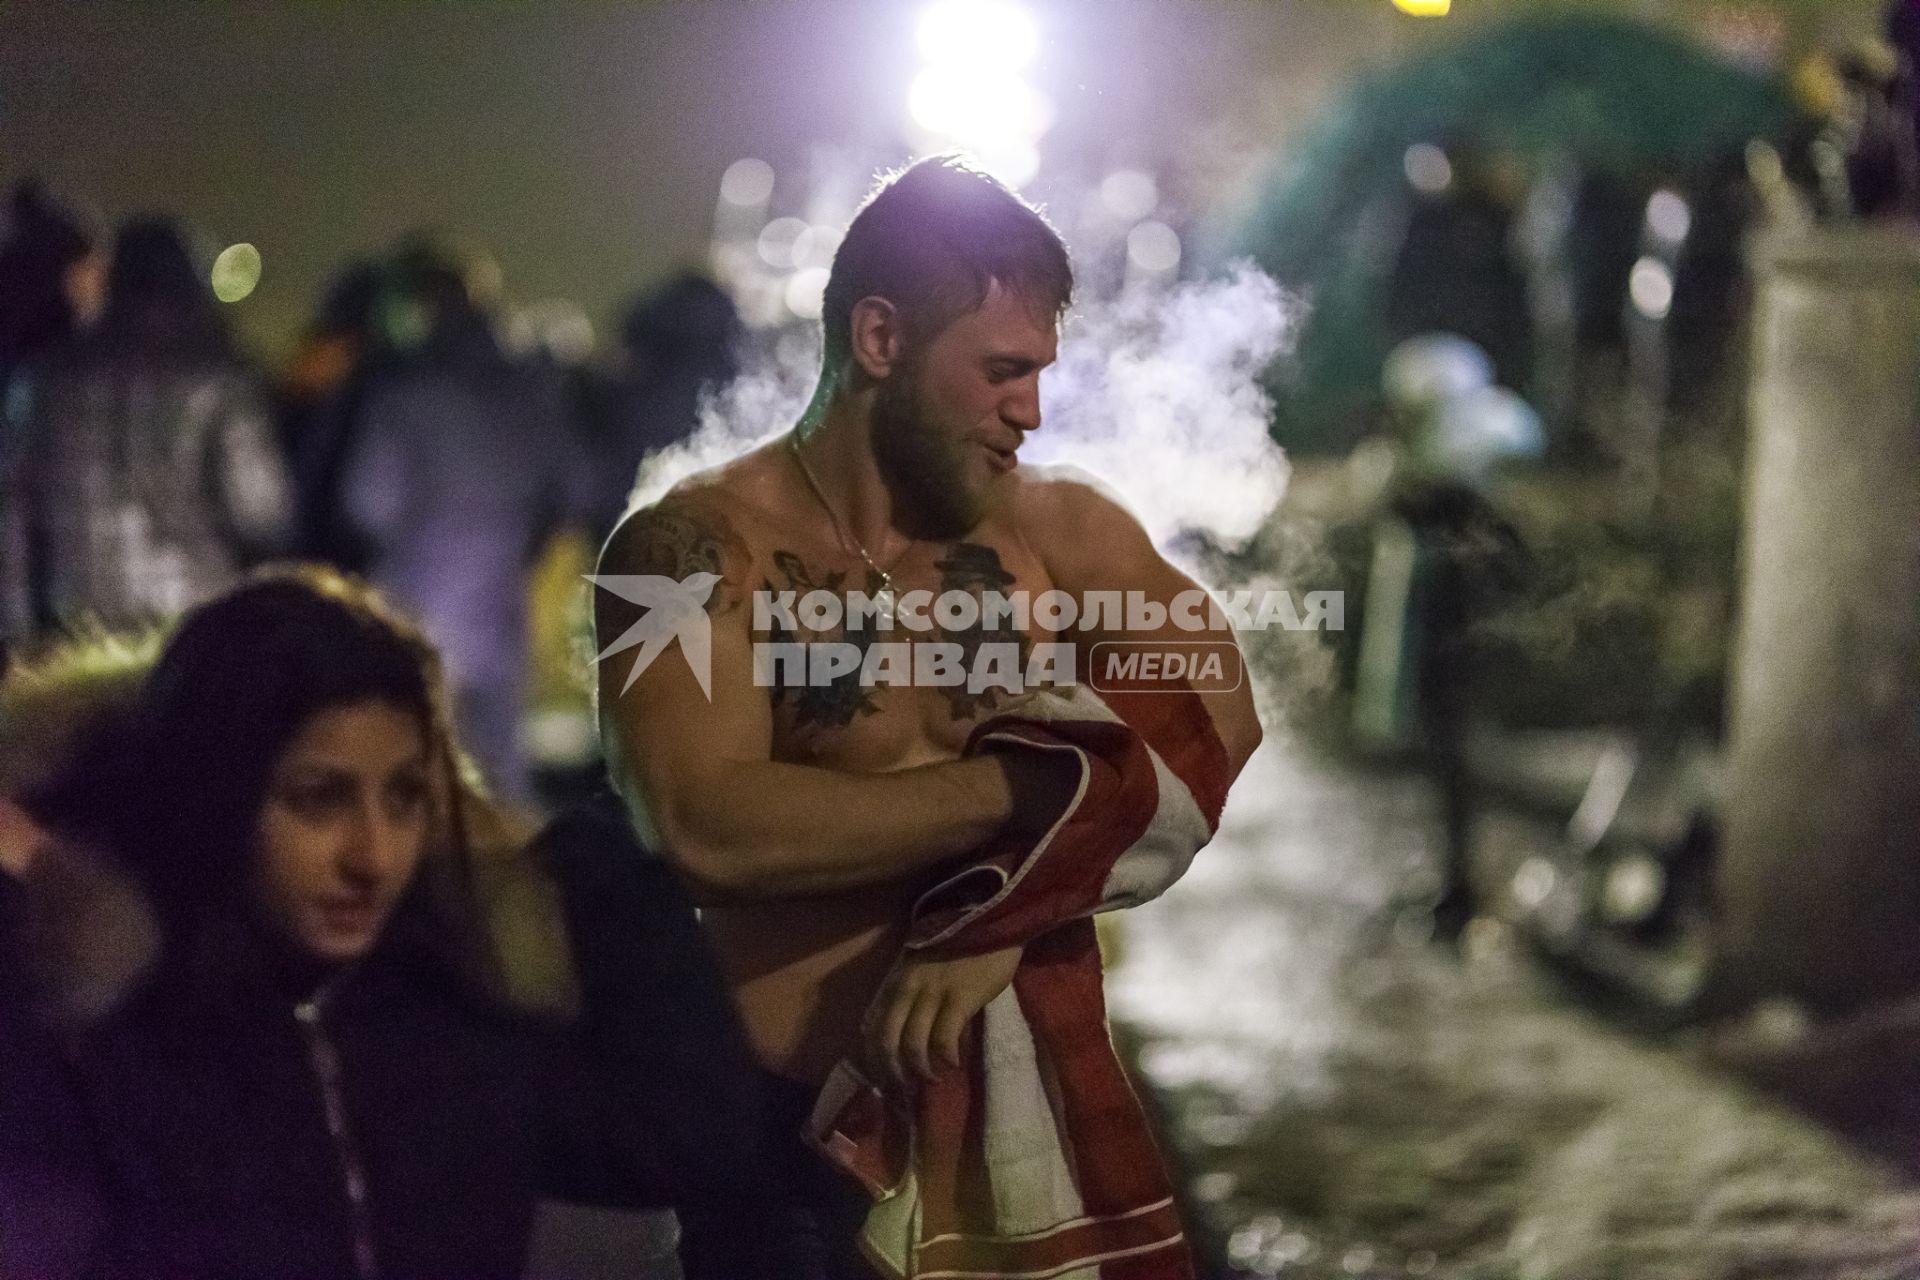 Крещенские купания в Саратове. На снимке: мужчина после купания.